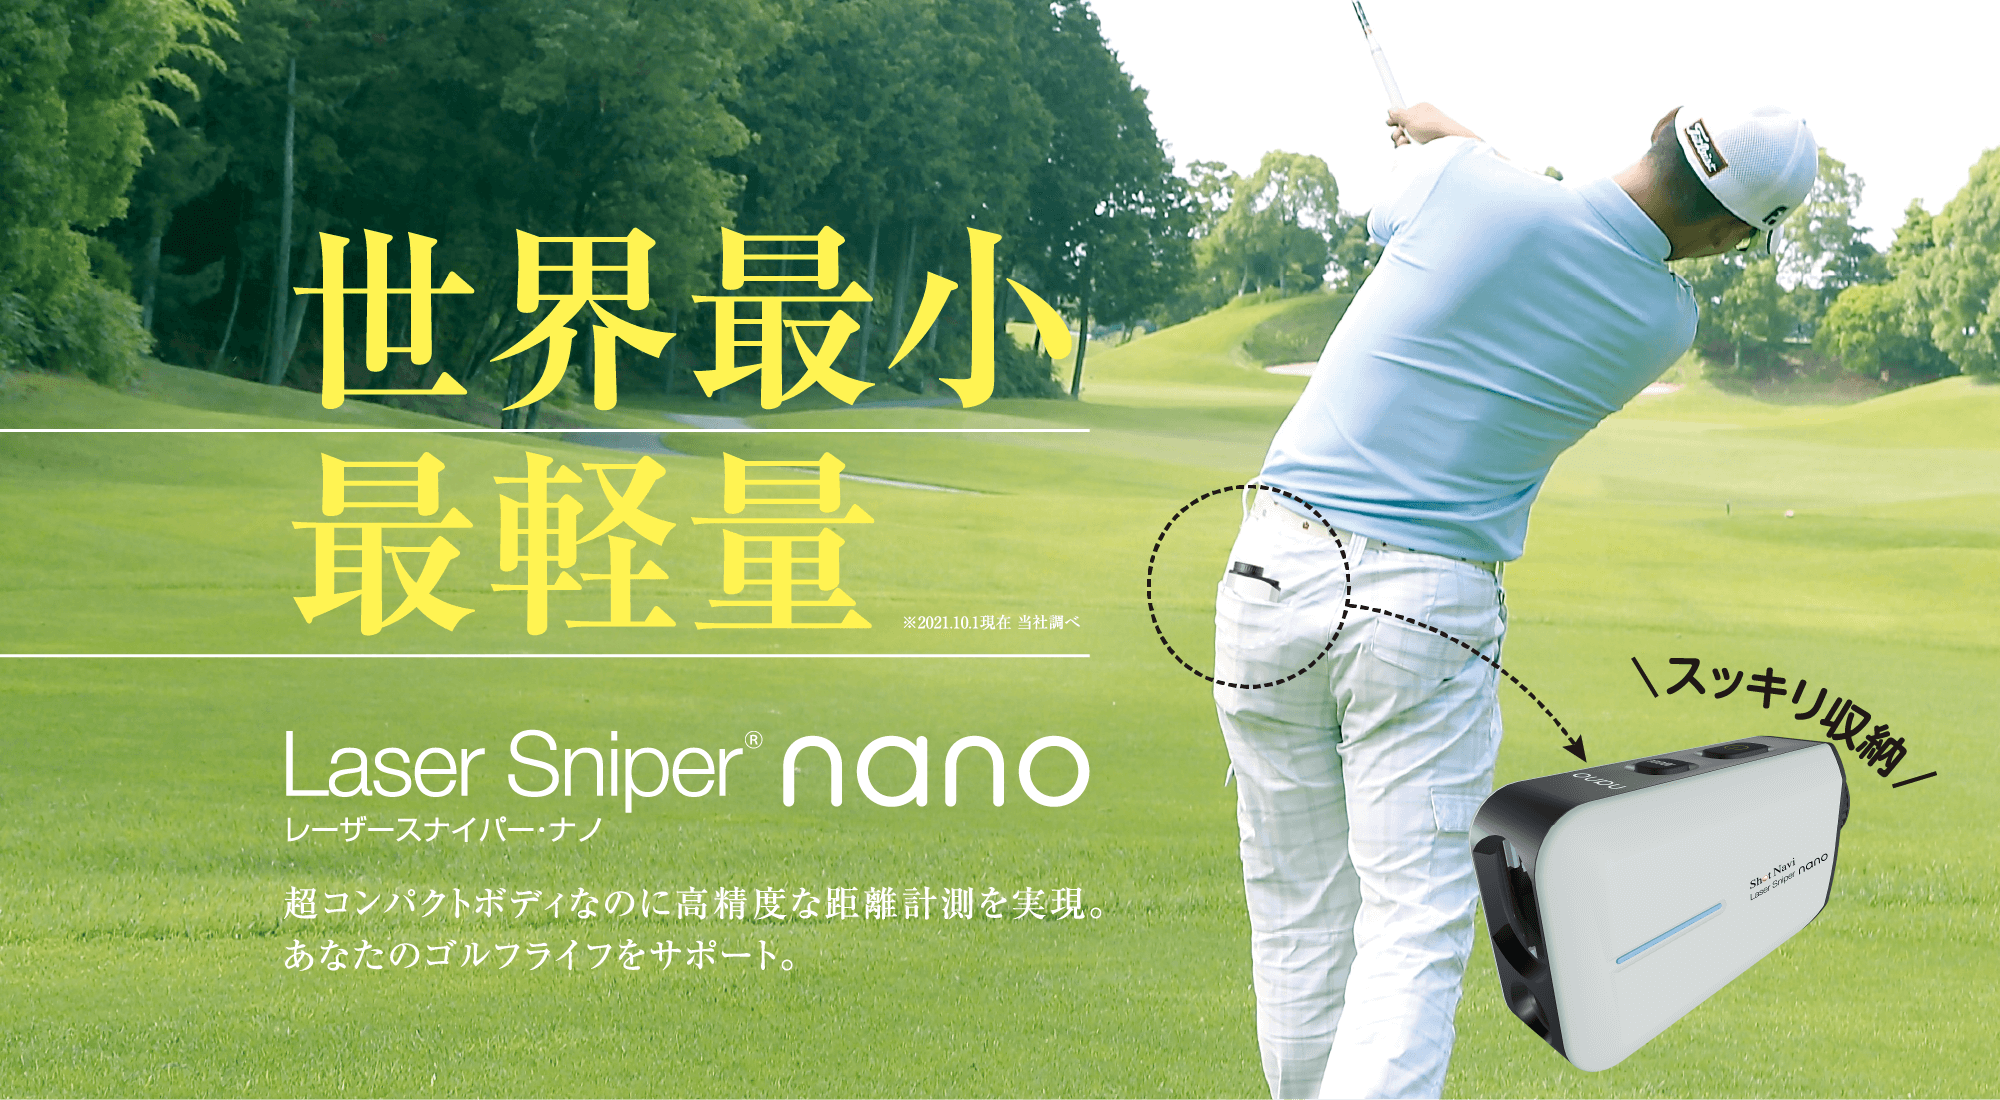 Laser Sniper nanoレーザースナイパー ナノ公式ショップ 保証期間